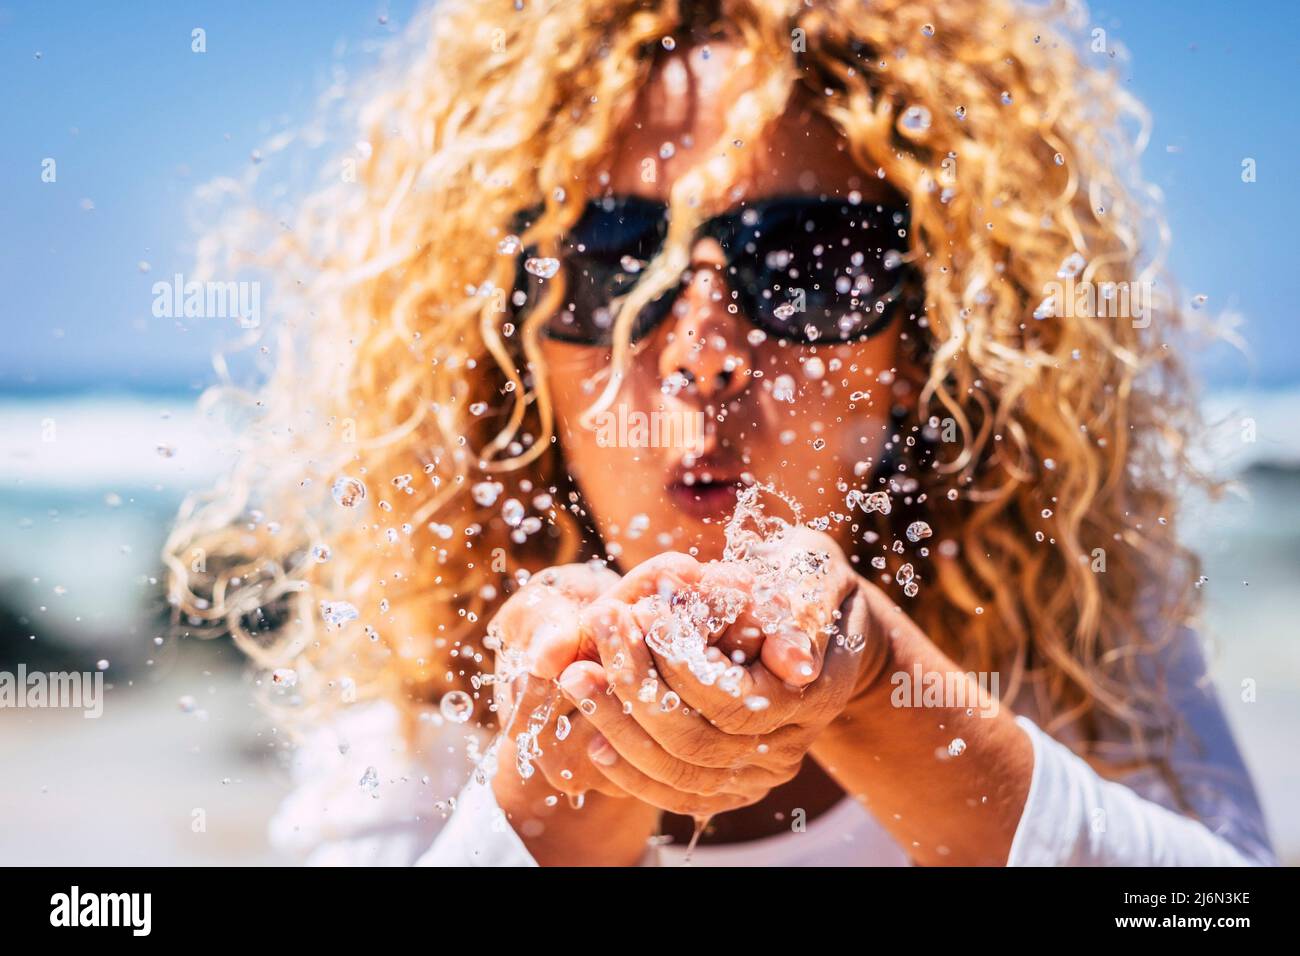 Nahaufnahme einer Frau, die Meerwasser aus den Händen bläst und Tropfen tut - Sommermenschen Urlaub und Reise-Lifestyle-Konzept - lockig blonde Frau in Stockfoto